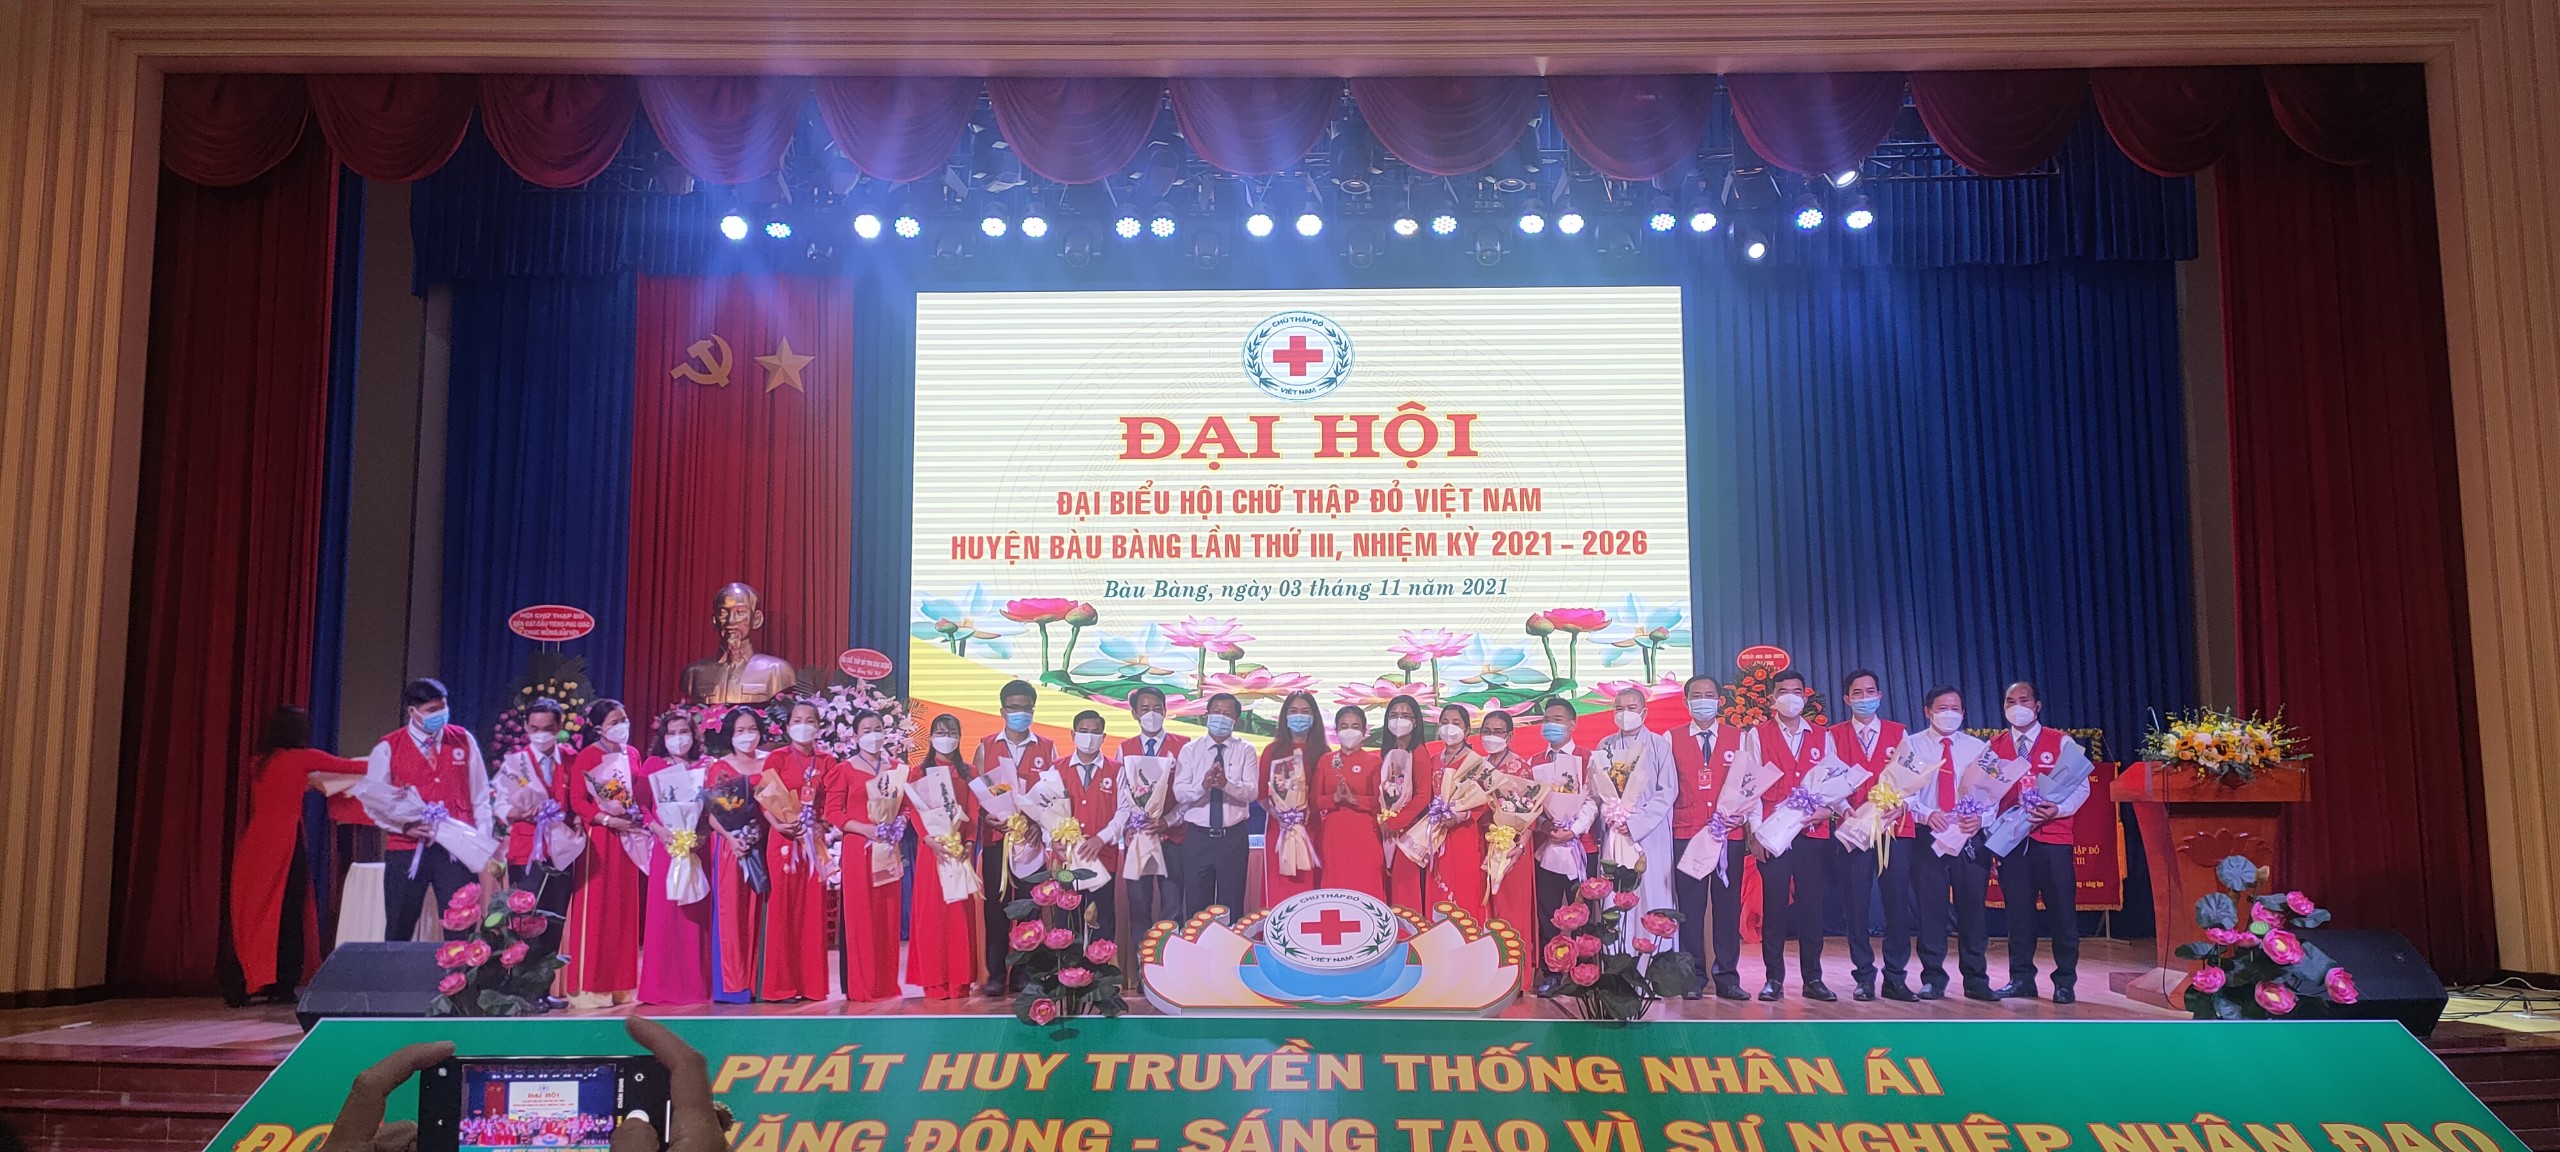 Đại hội Đại biểu Hội Chữ thập đỏ huyện Bàu Bàng lần thứ III nhiệm kỳ 2021 - 2026